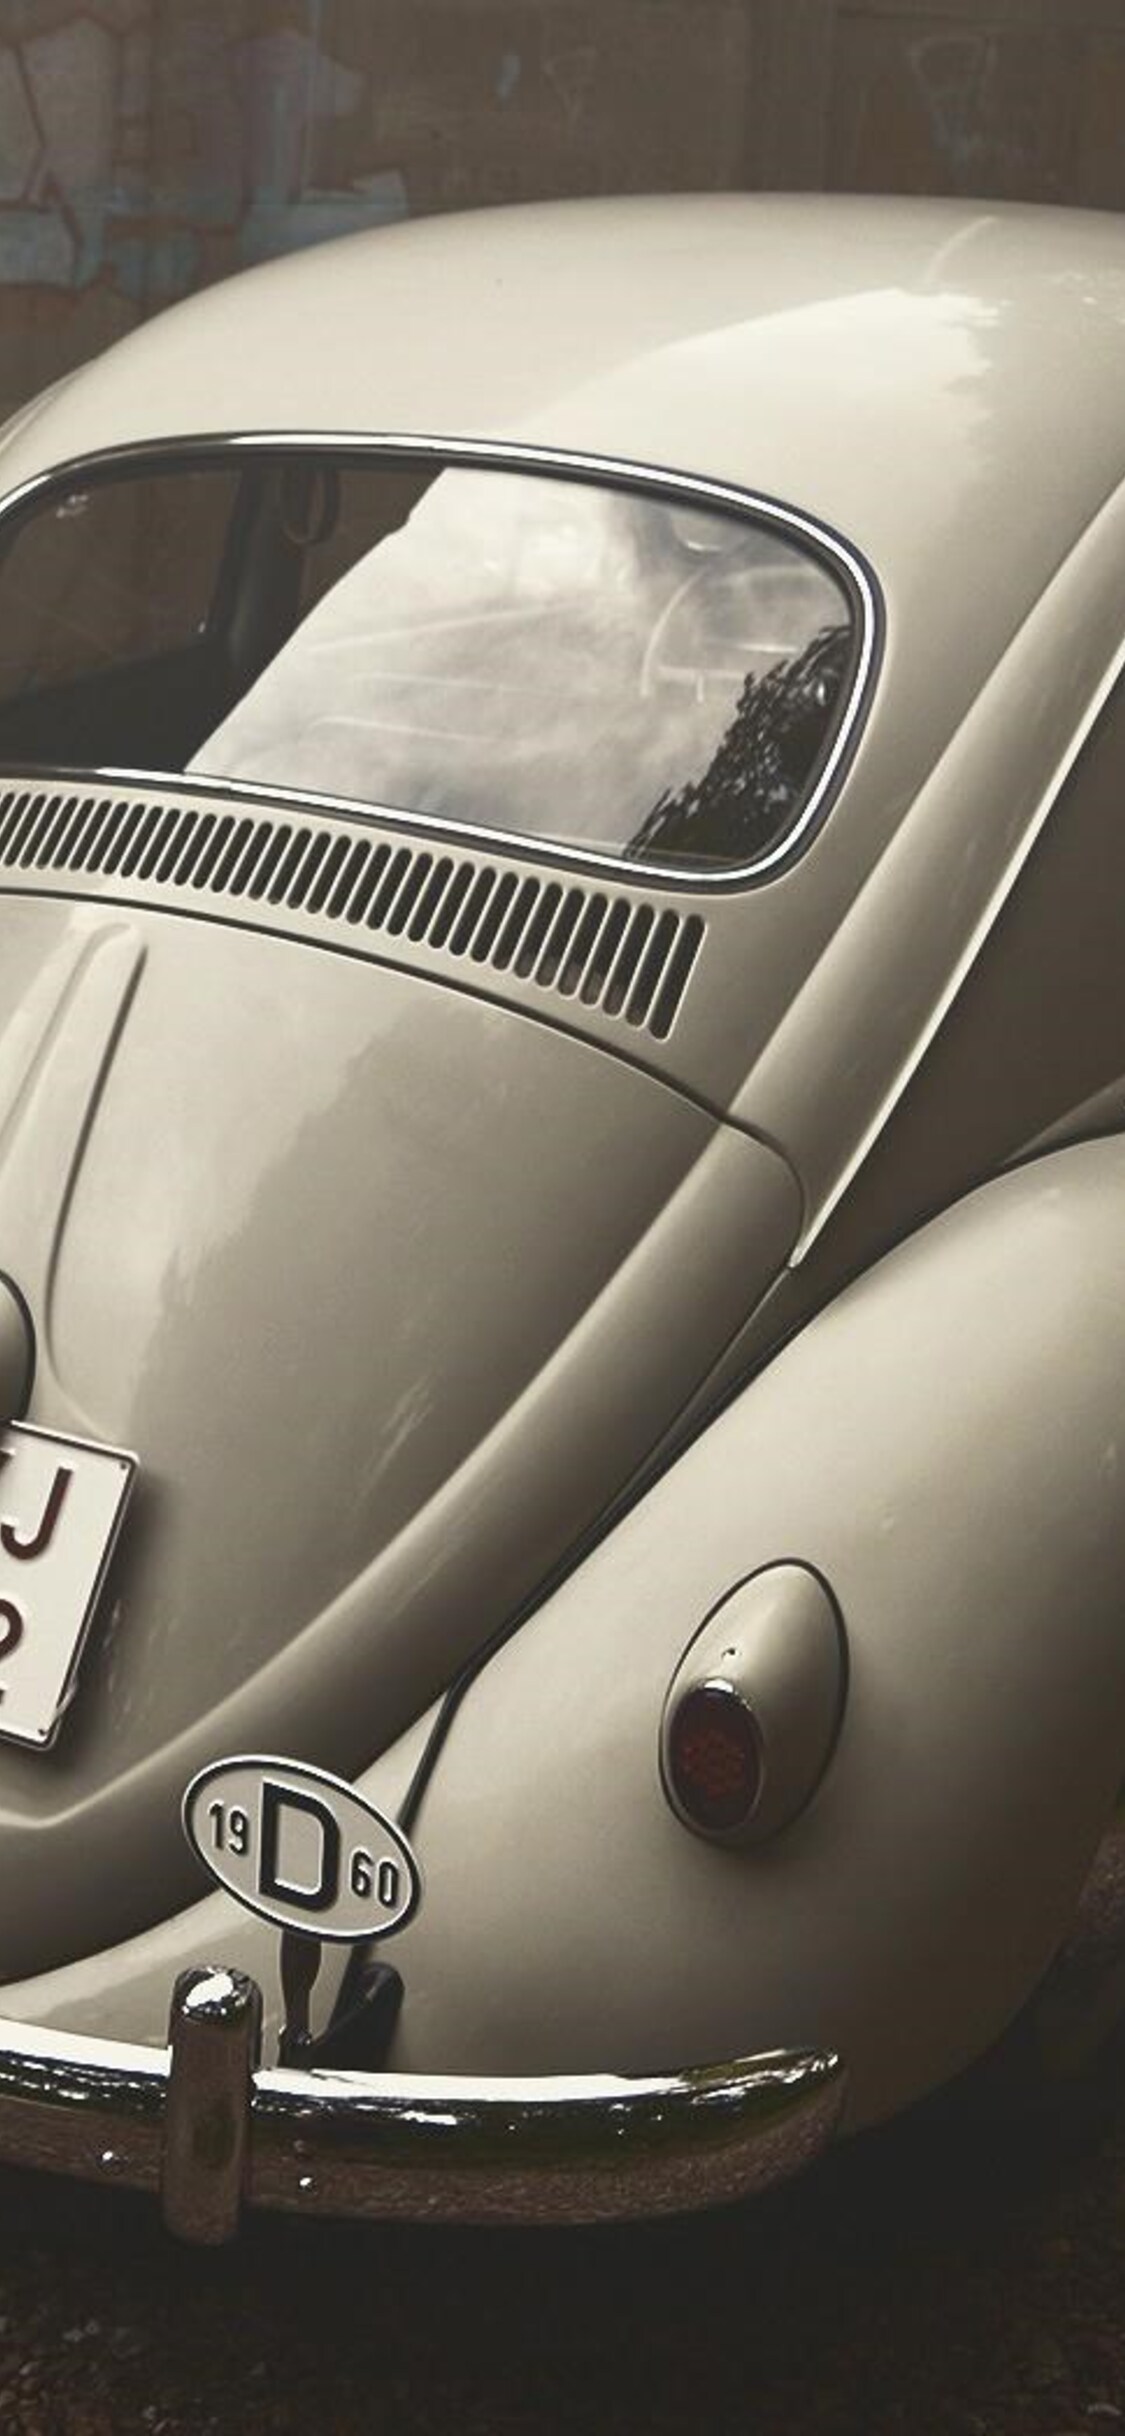 Volkswagen Beetle Wallpapers